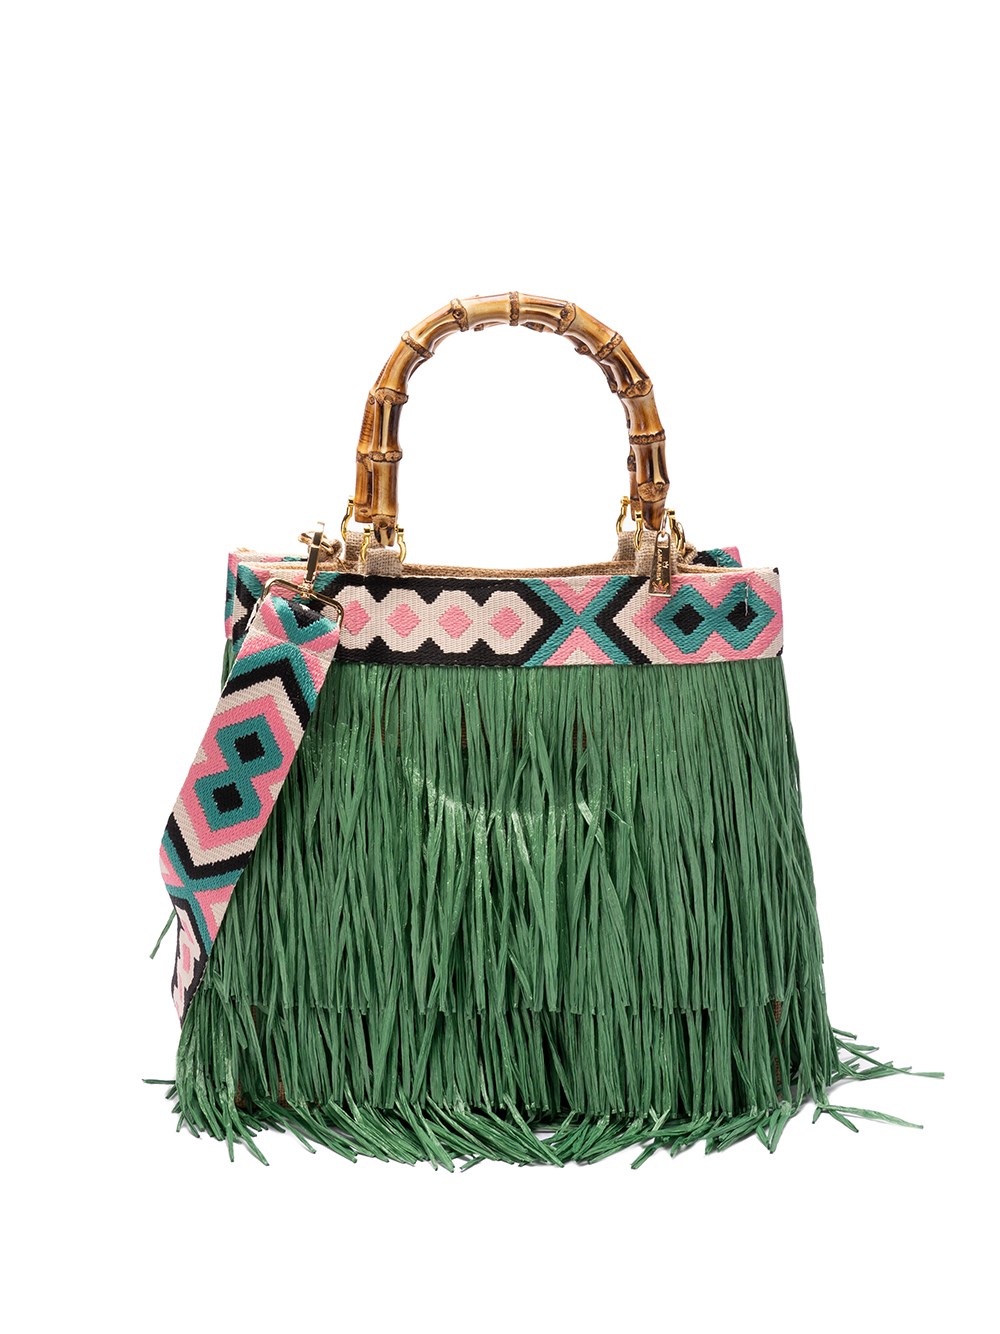 La Milanesa Caipirinha Handbag In Green